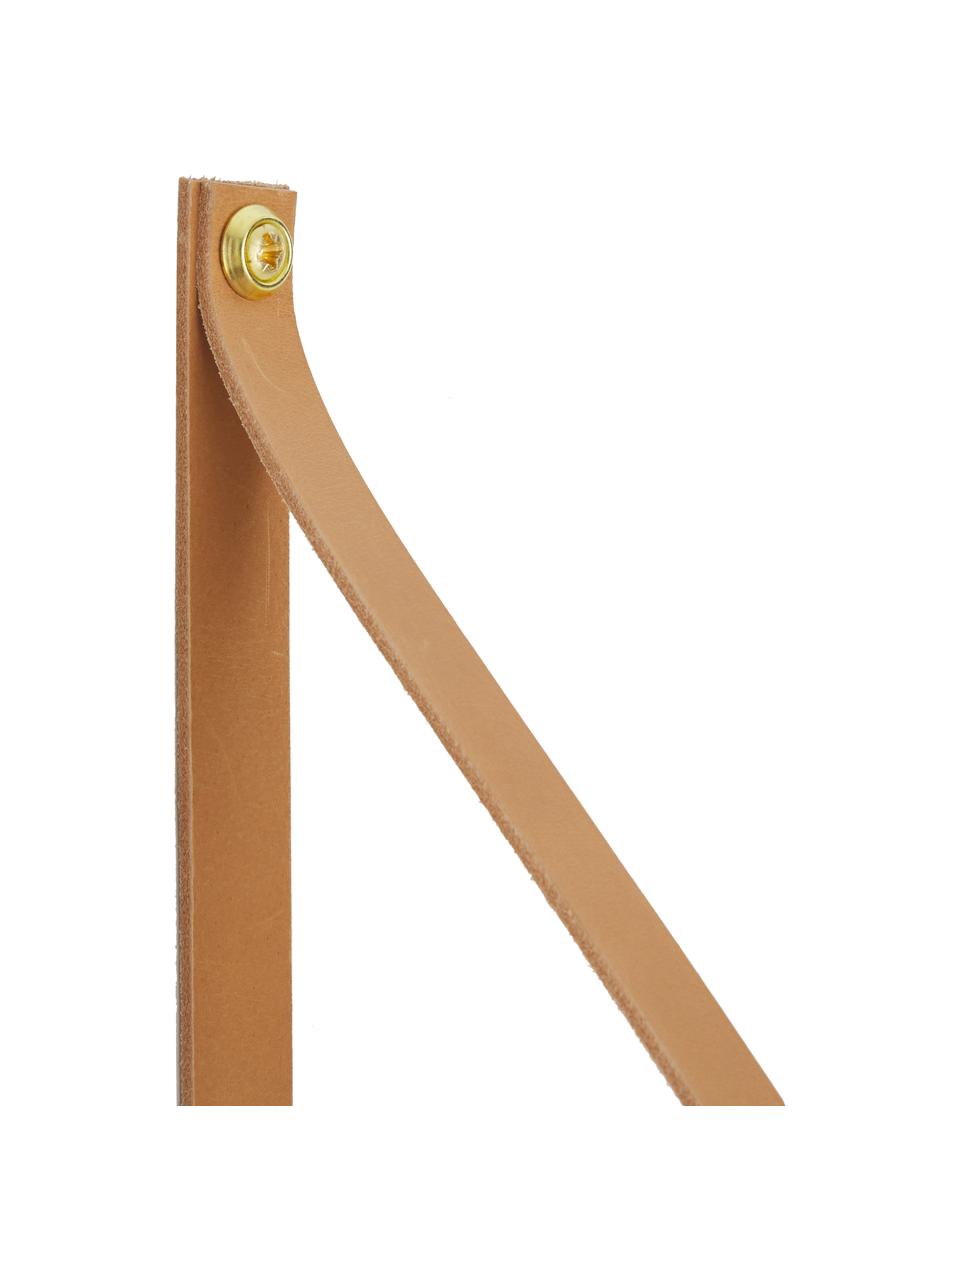 Wandplank Shelfie, Plank: gepoedercoat metaal, Riemen: leer, Grijs, bruin, 50 x 23 cm